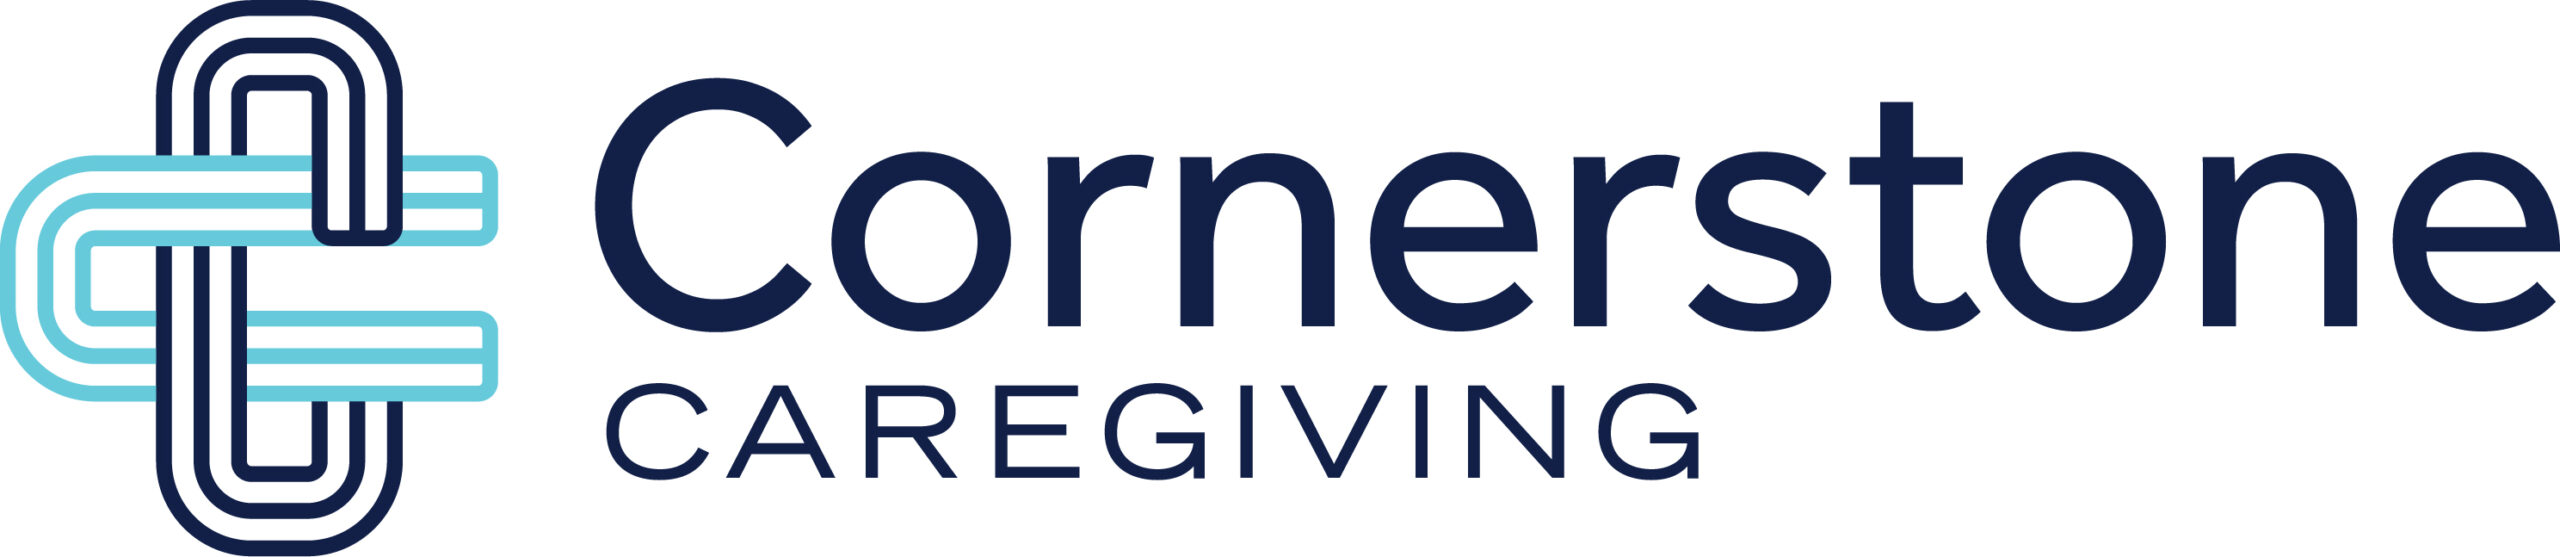 cornerstone-caregiving-logo-full-color-rgb